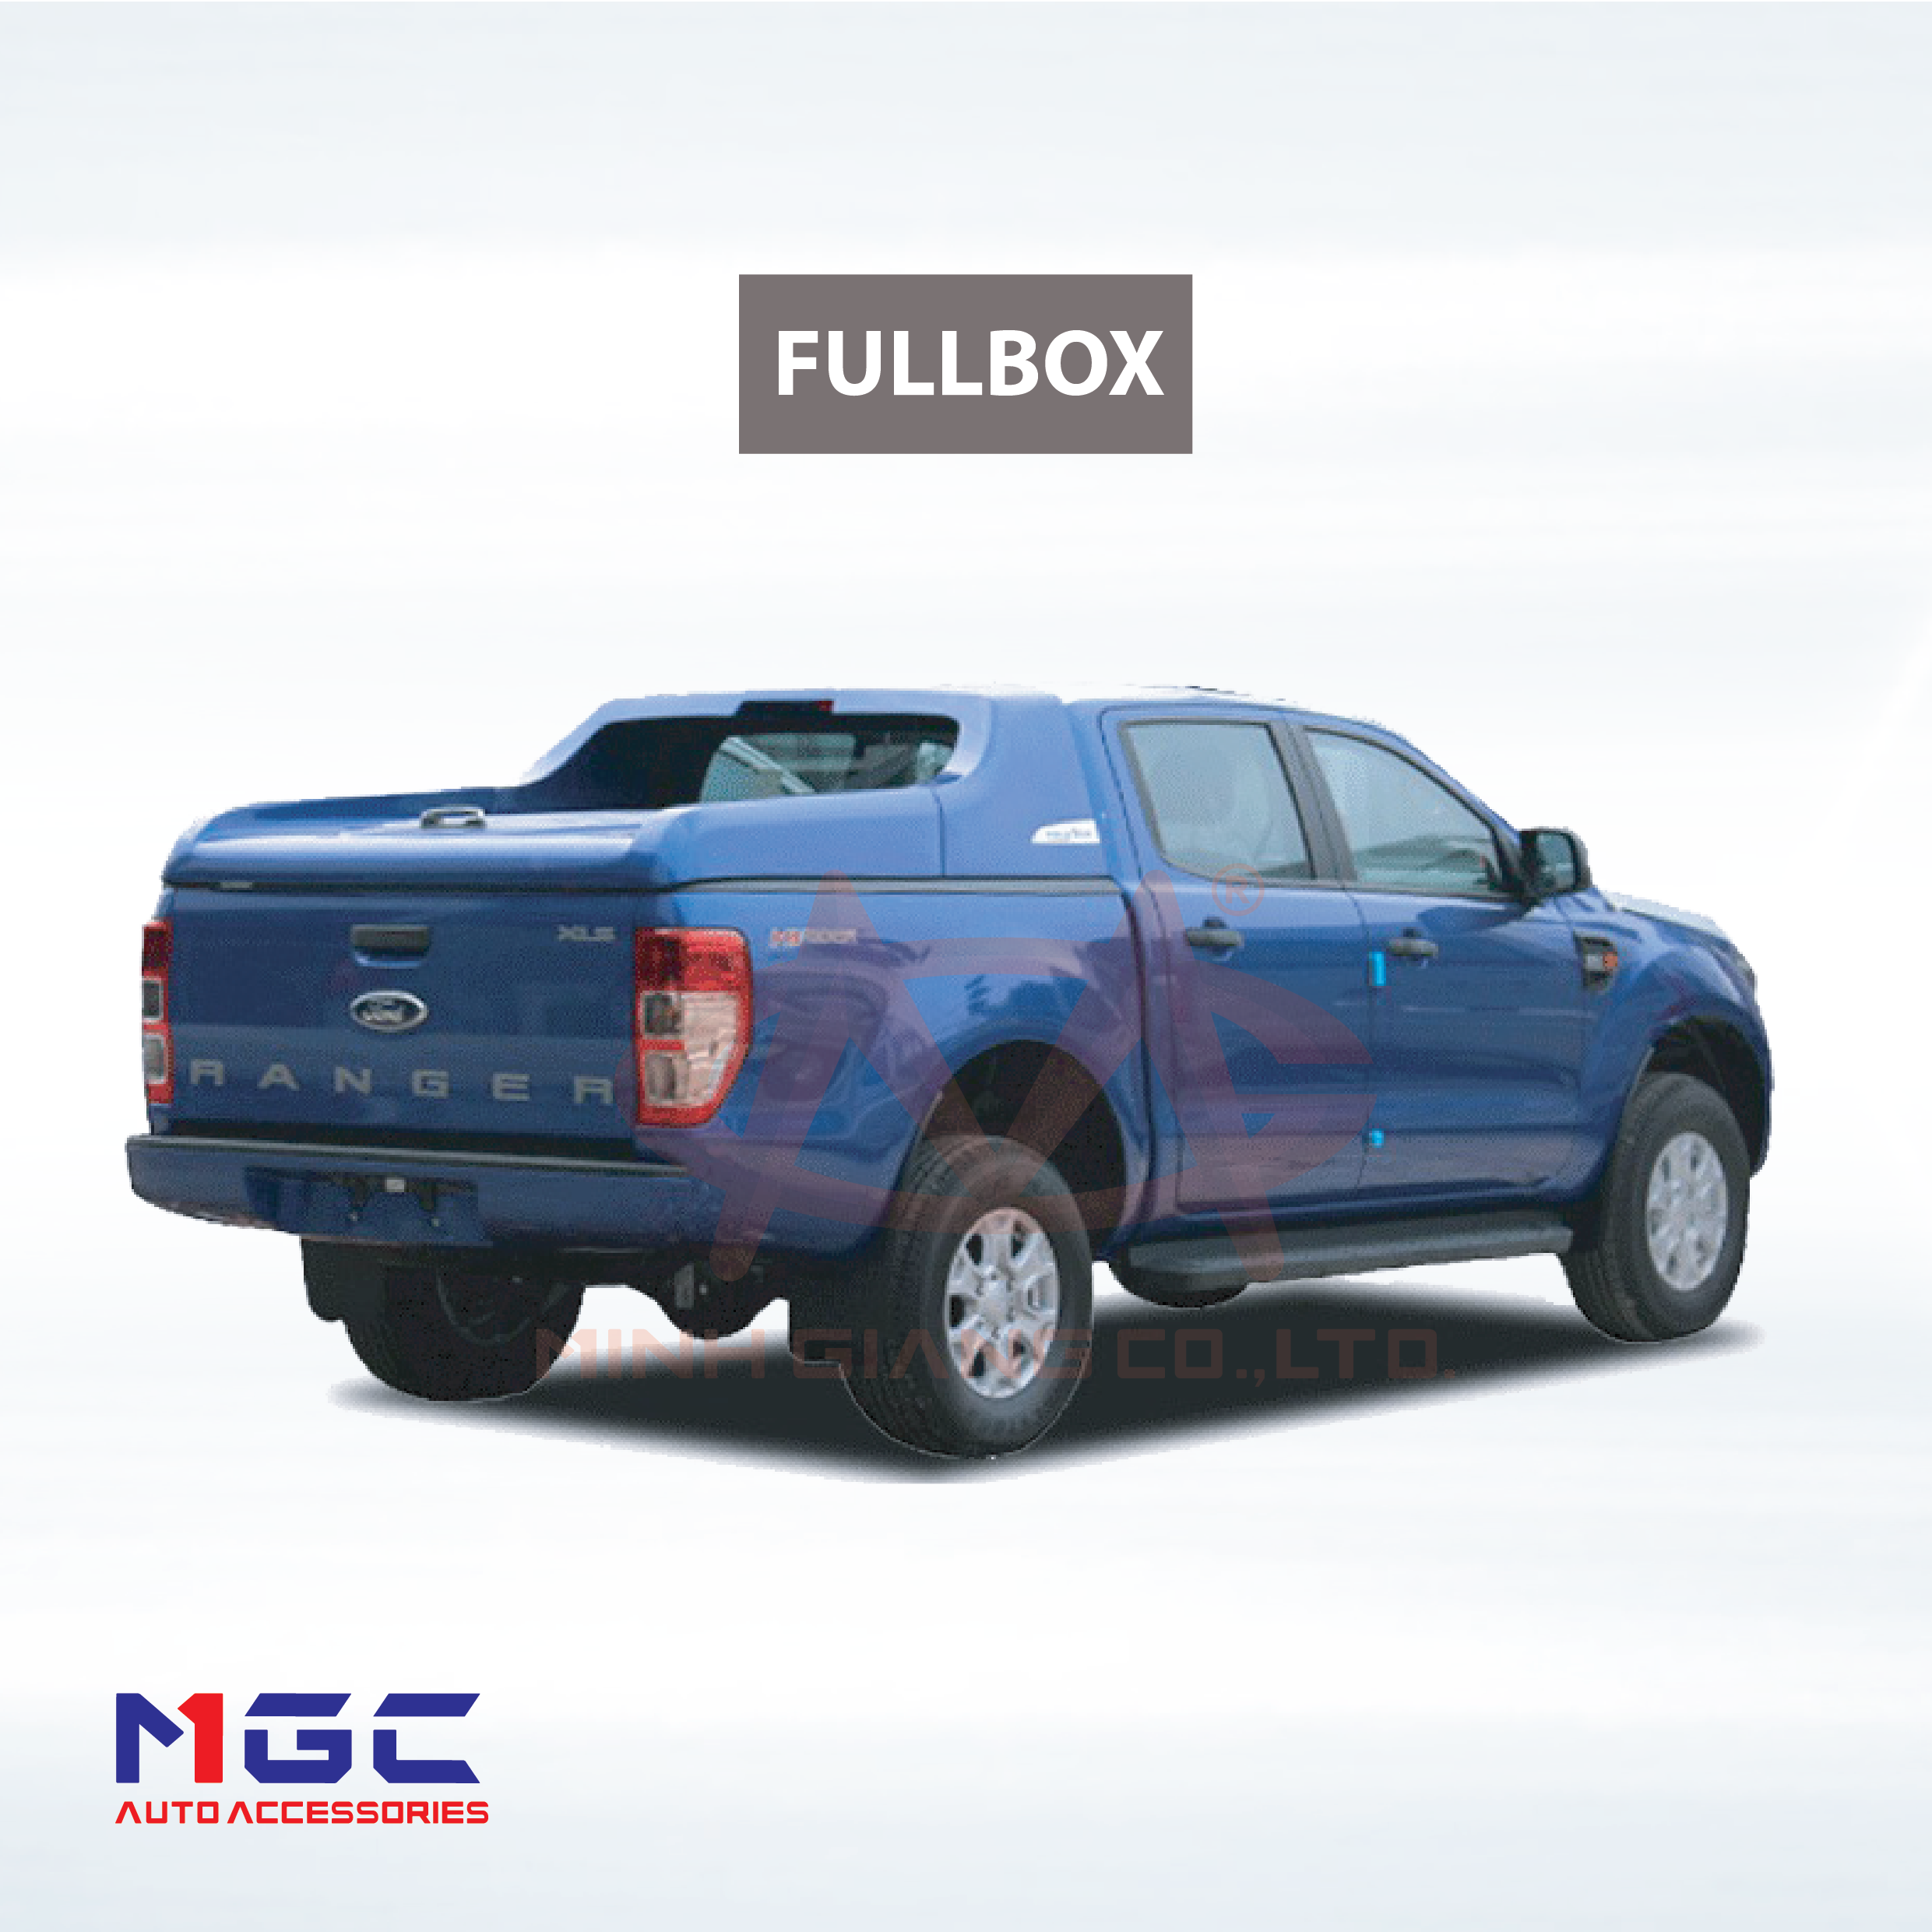 Nắp thùng MGC cho Ford Ranger (FULLBOX)